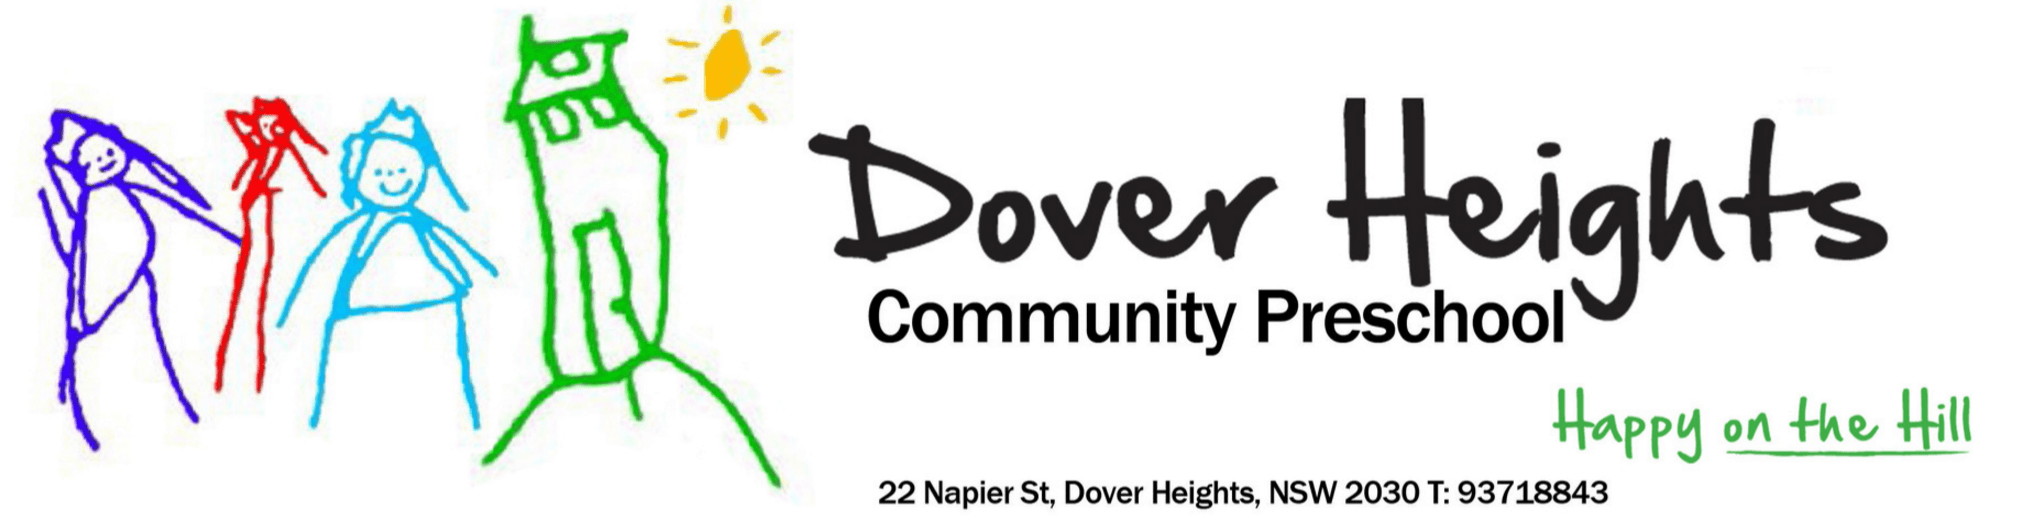 Dover Heights Community Preschool